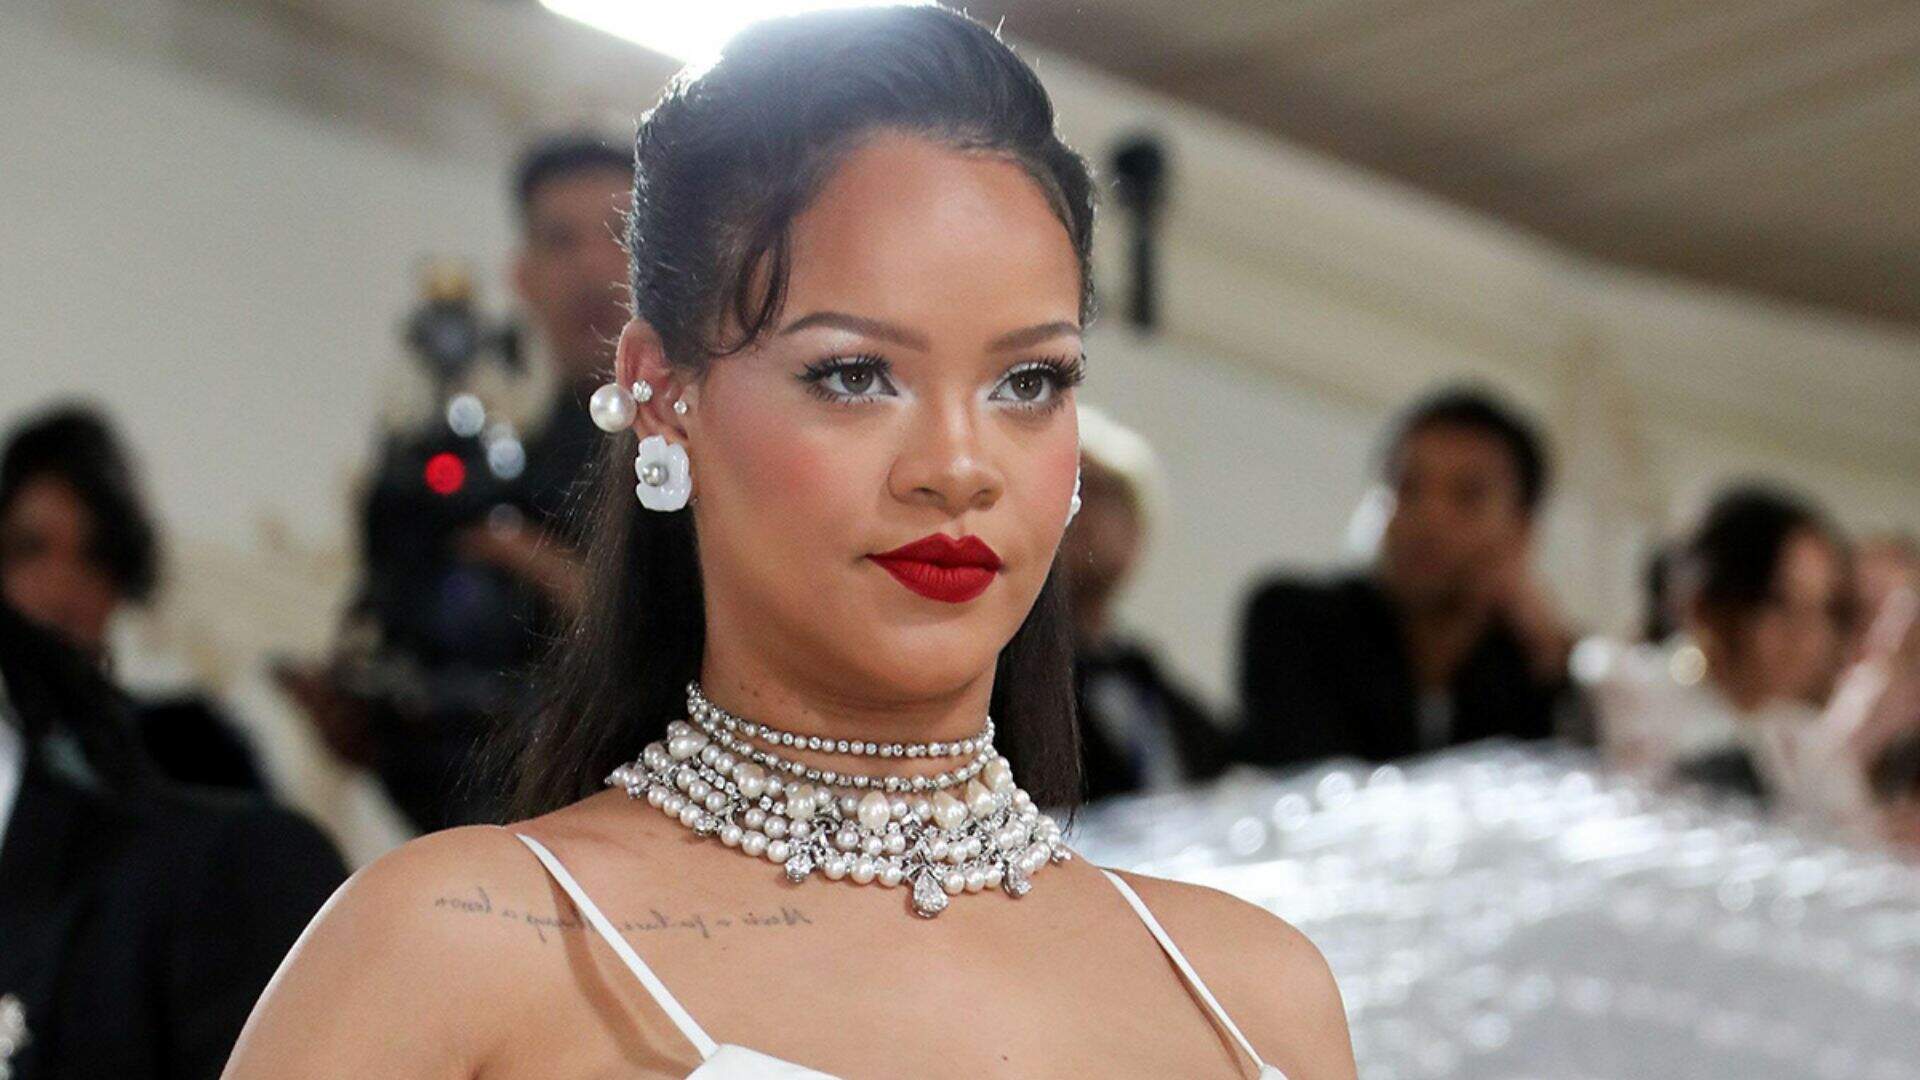 Durante o MET Gala, Rihanna fala sobre segunda gravidez: “Náusea”